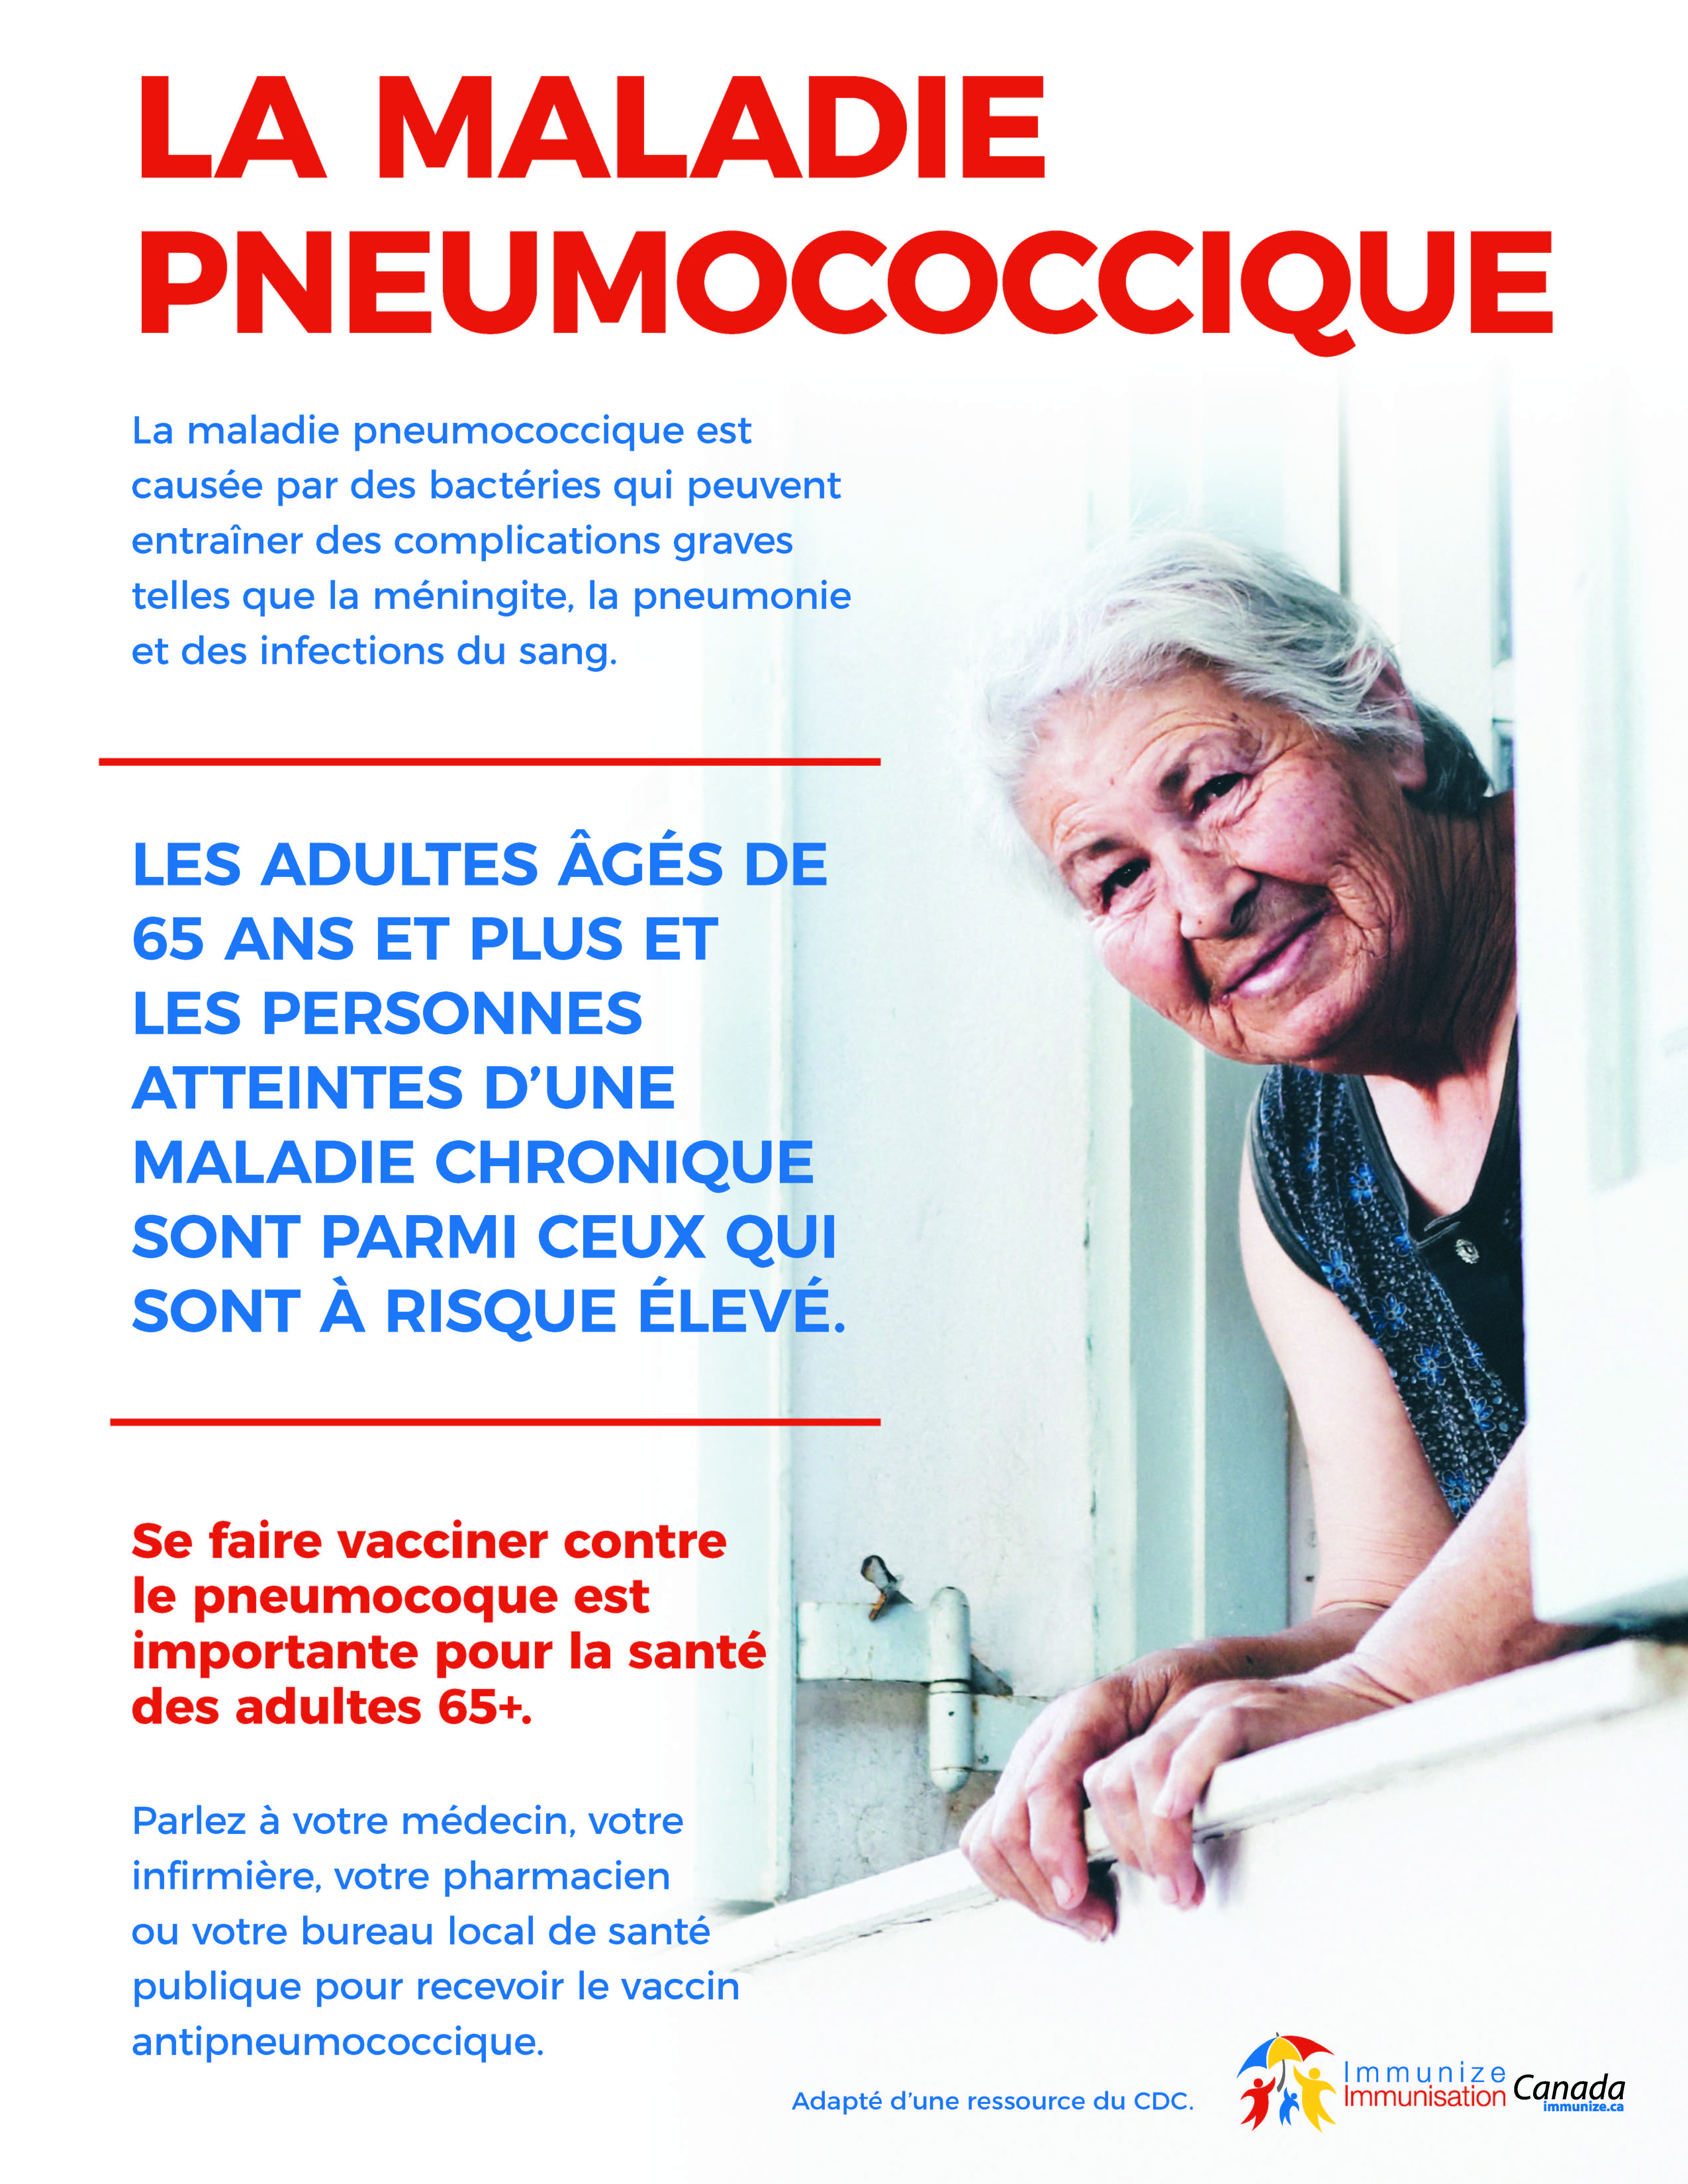 La maladie pneumococcique chez les adultes de 65 ans et plus